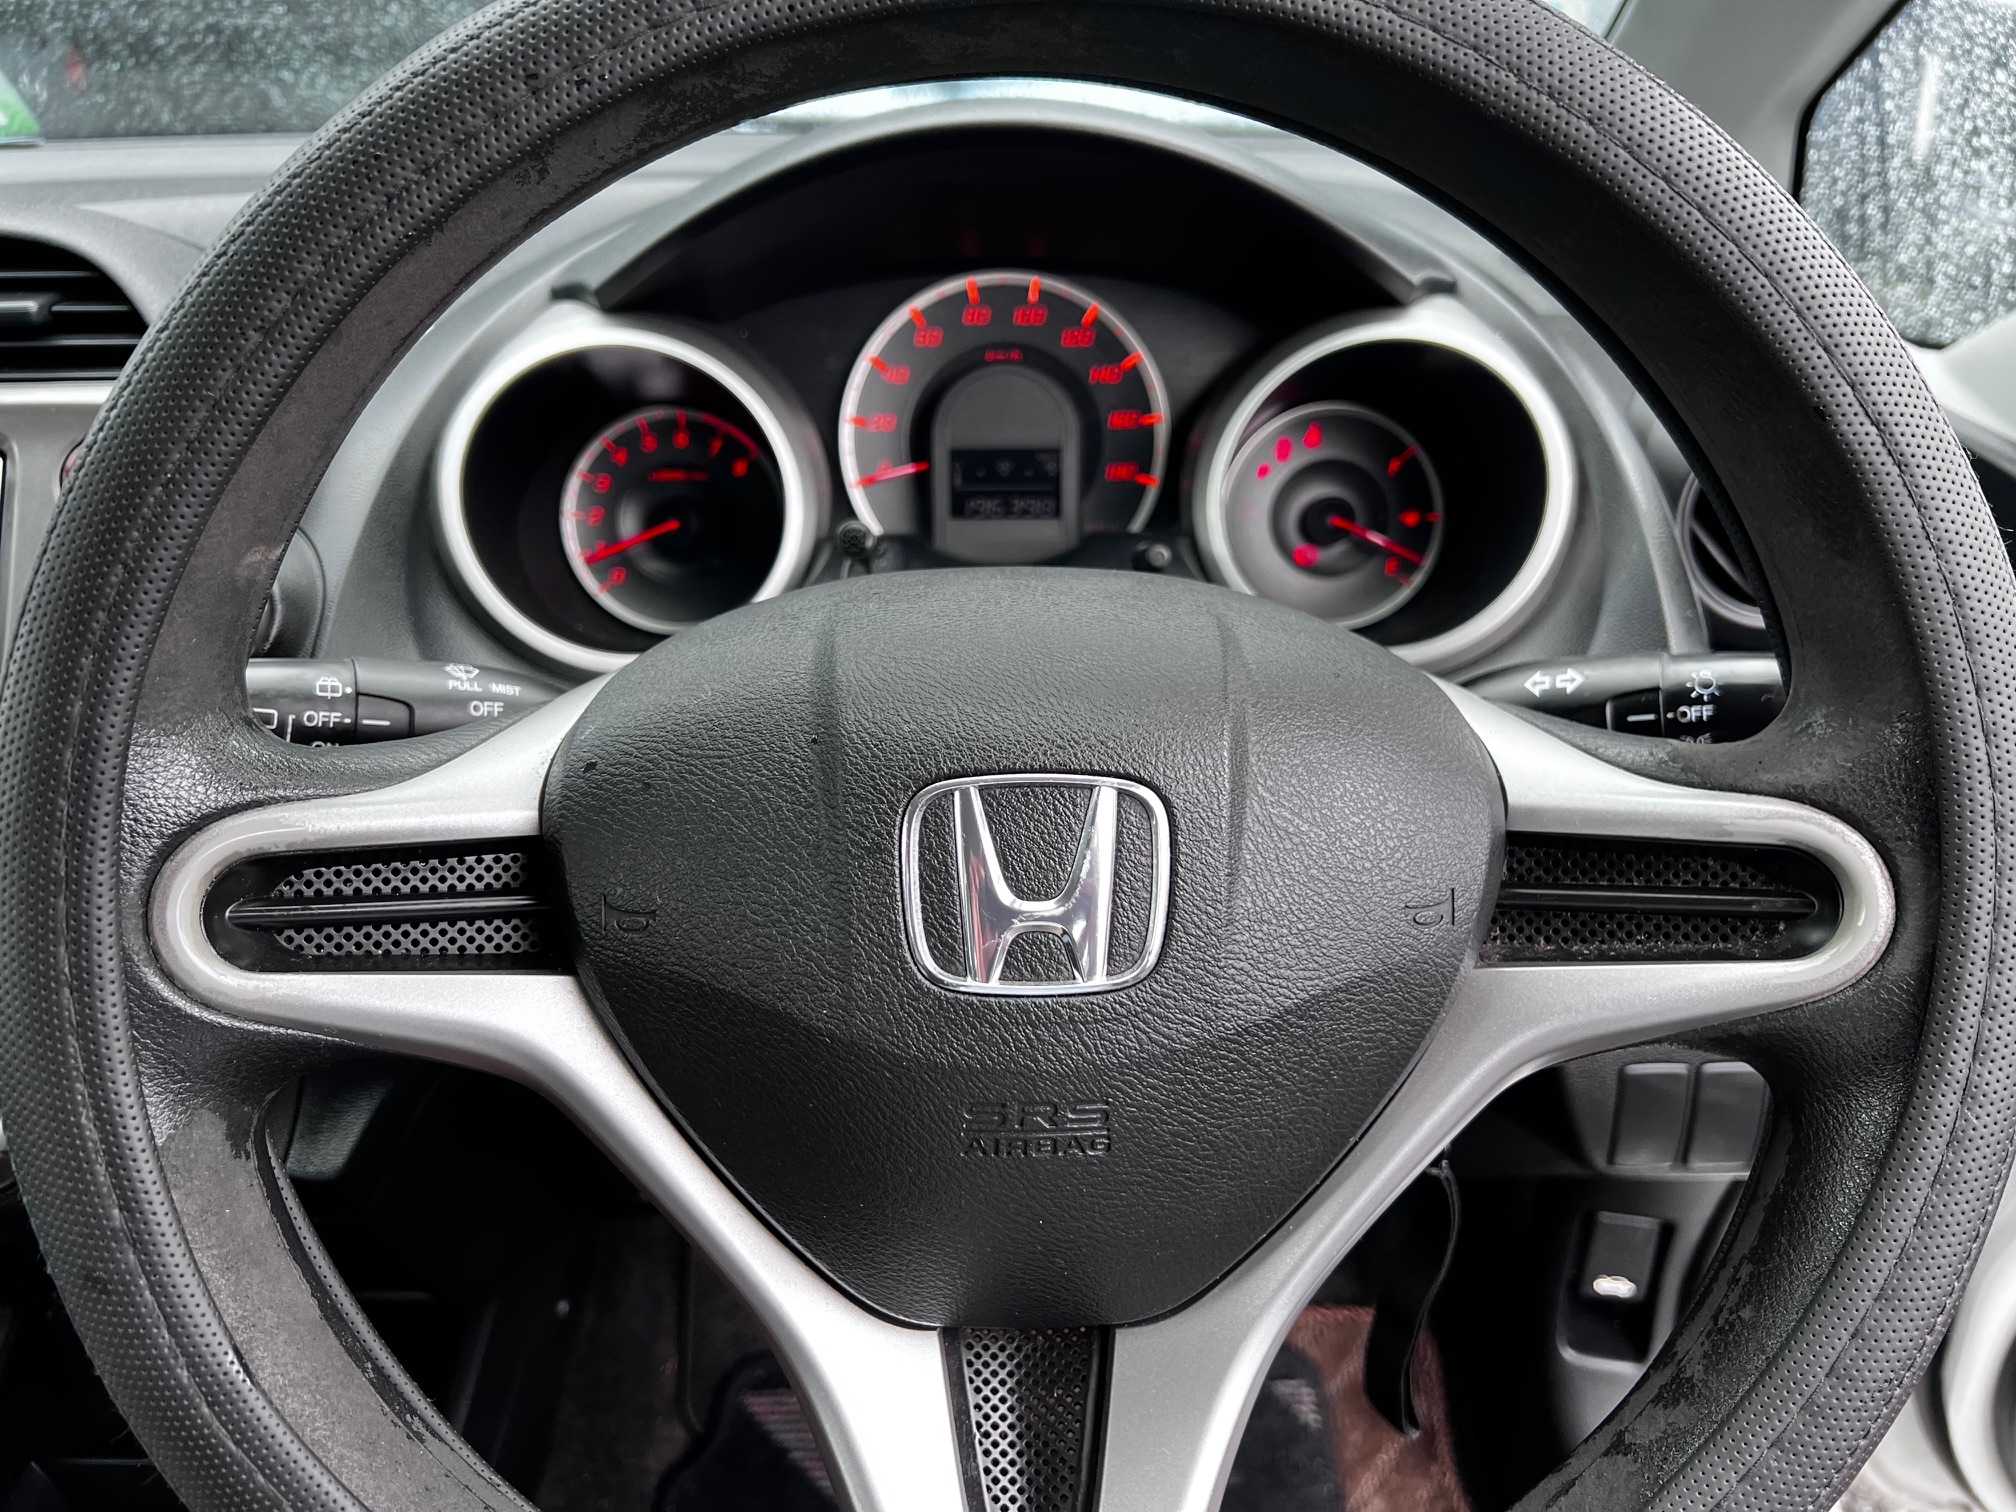 Honda Fit 2009 Image 13